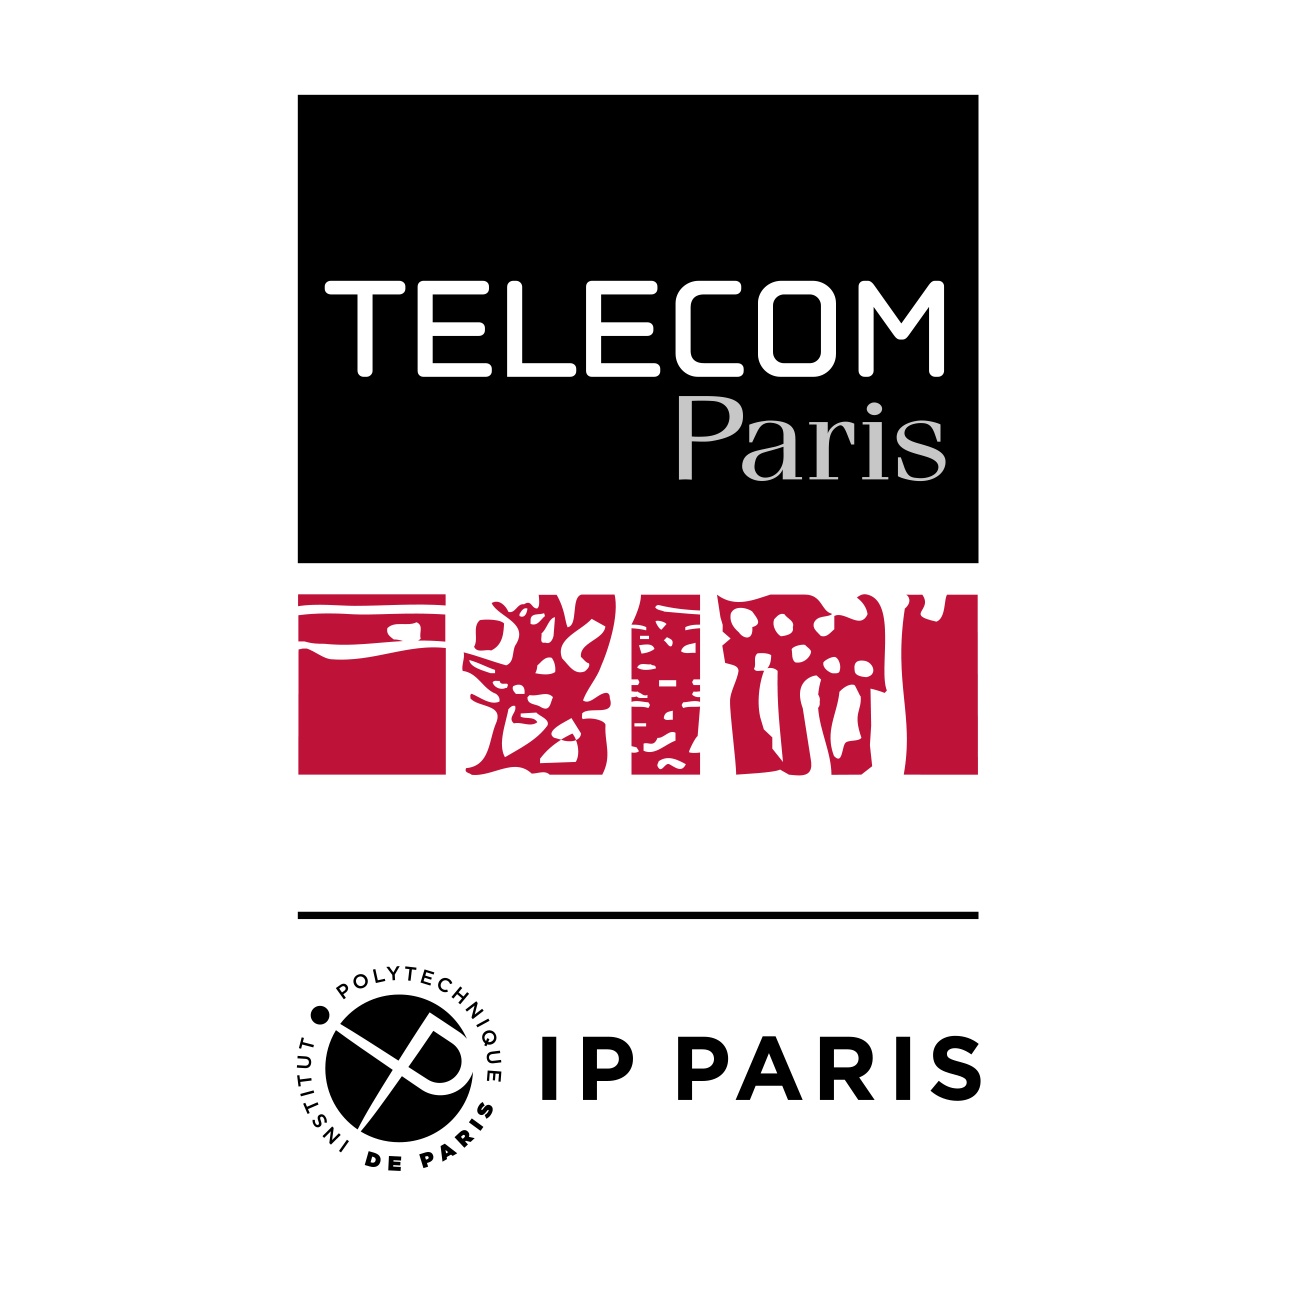 Télécom Paris